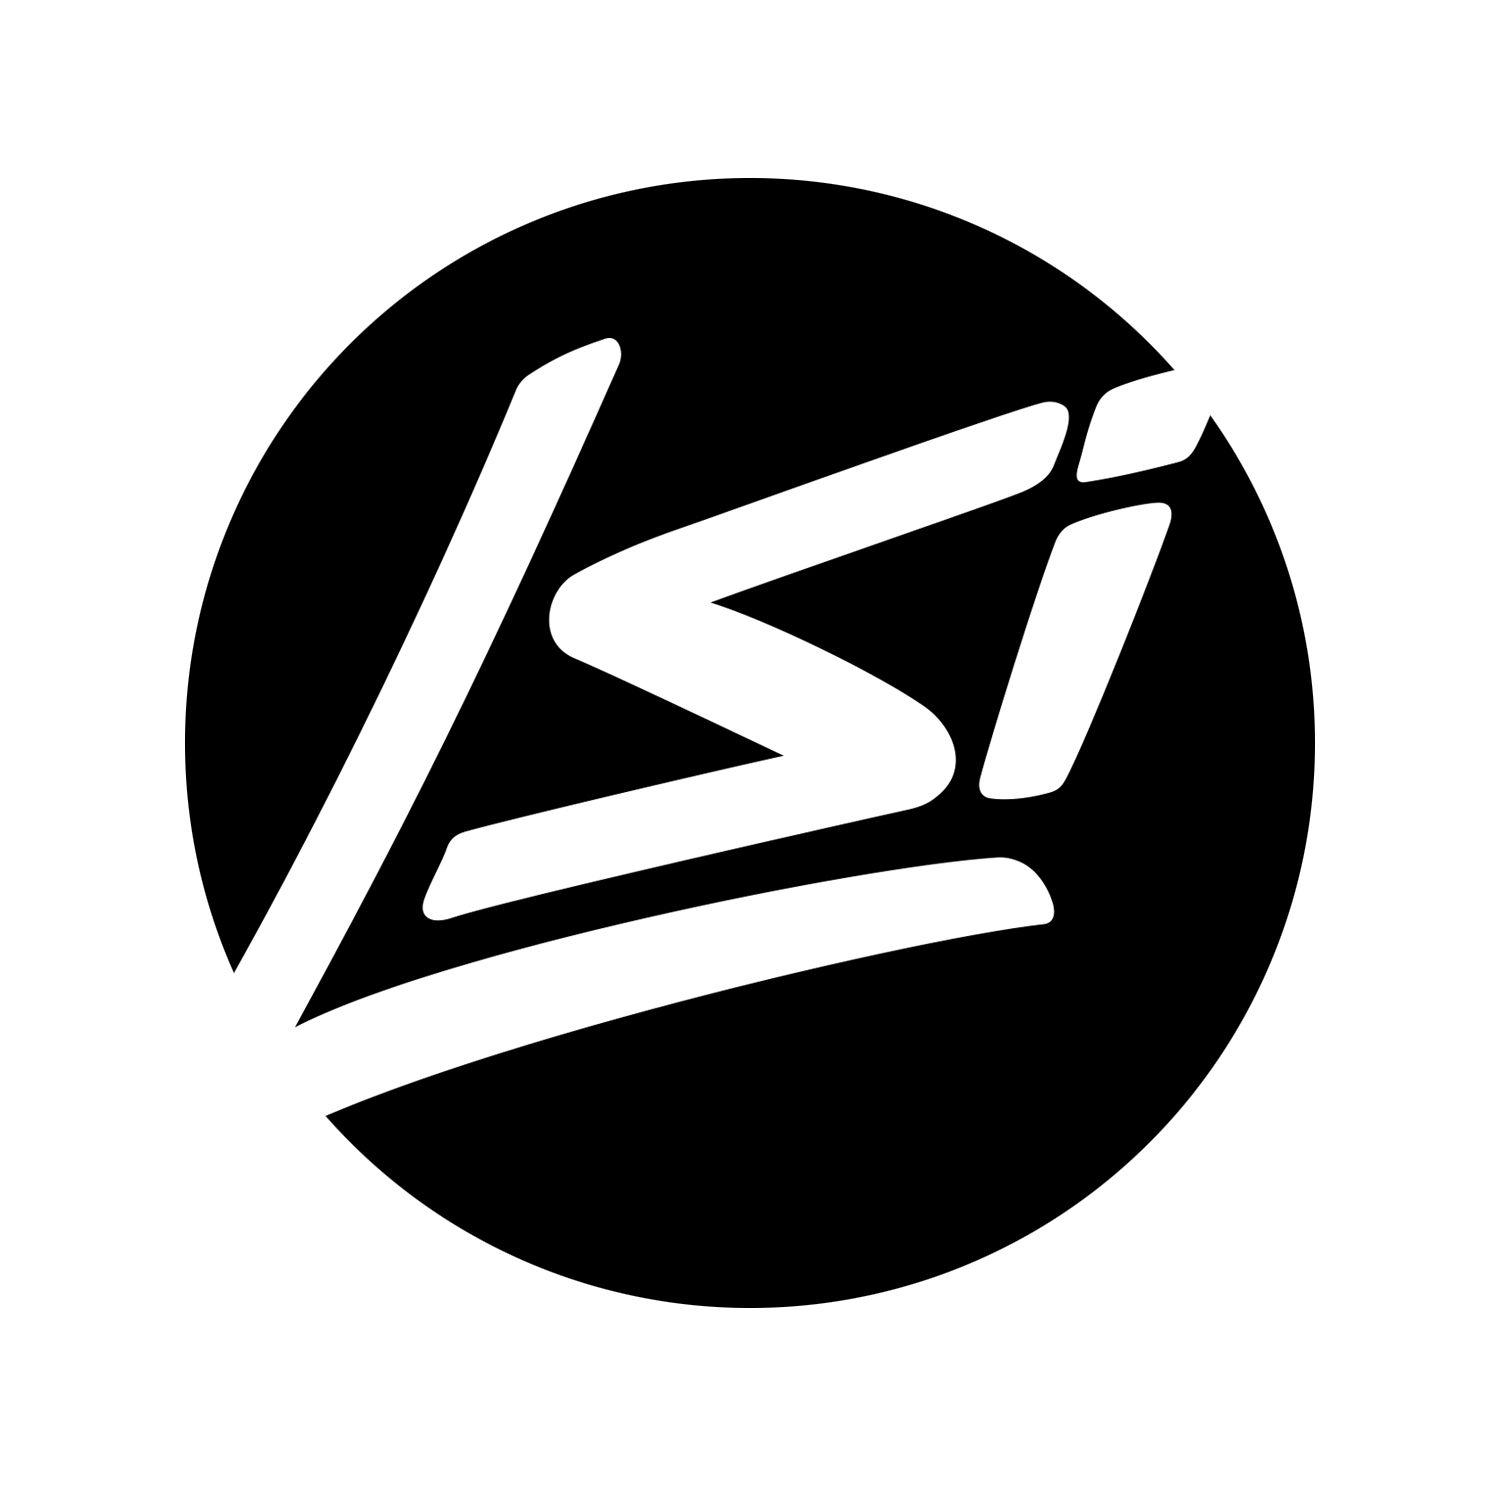 LSI Logo - Logo File Downloads